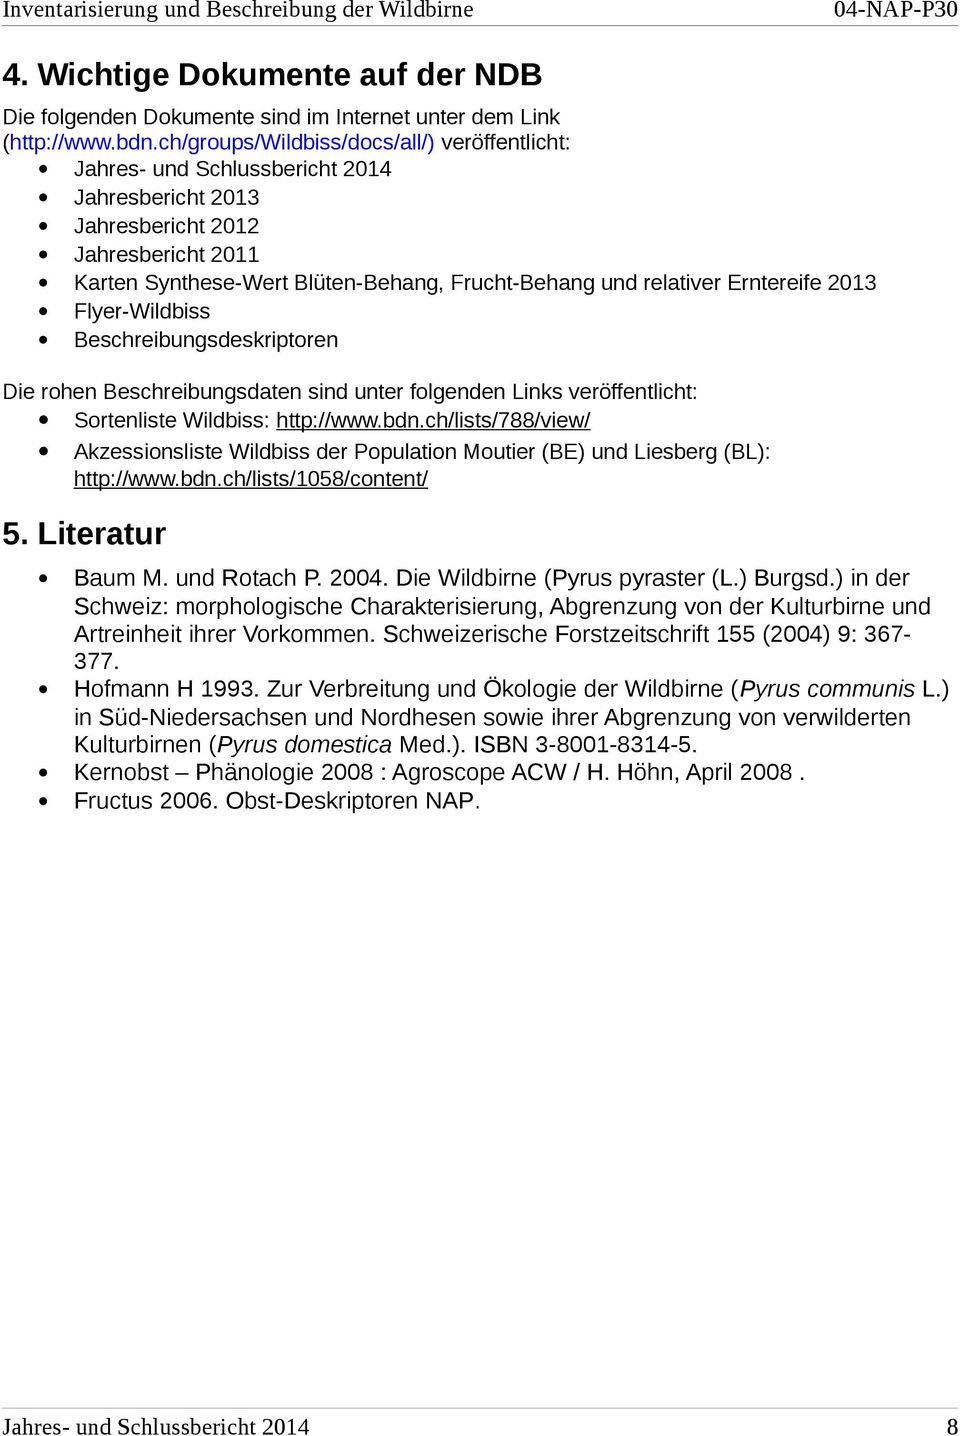 Erntereife 2013 Flyer-Wildbiss Beschreibungsdeskriptoren Die rohen Beschreibungsdaten sind unter folgenden Links veröffentlicht: Sortenliste Wildbiss: http://www.bdn.